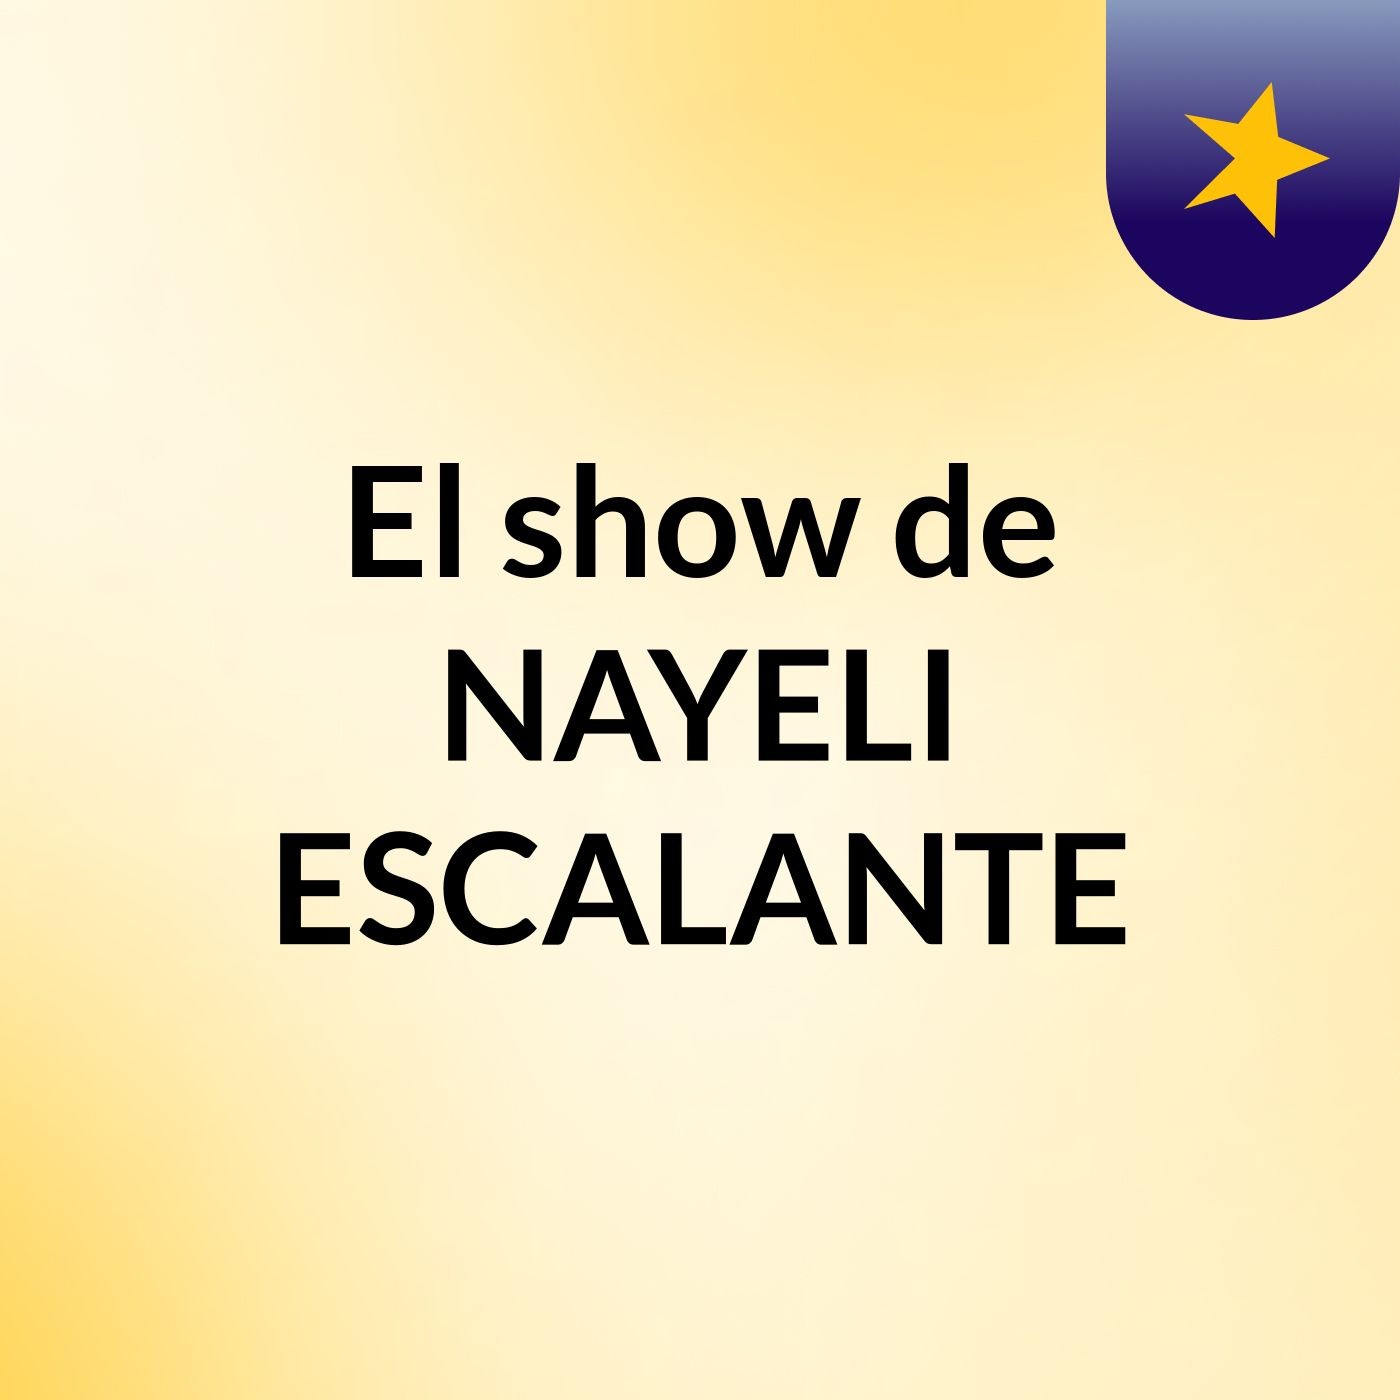 El show de NAYELI ESCALANTE